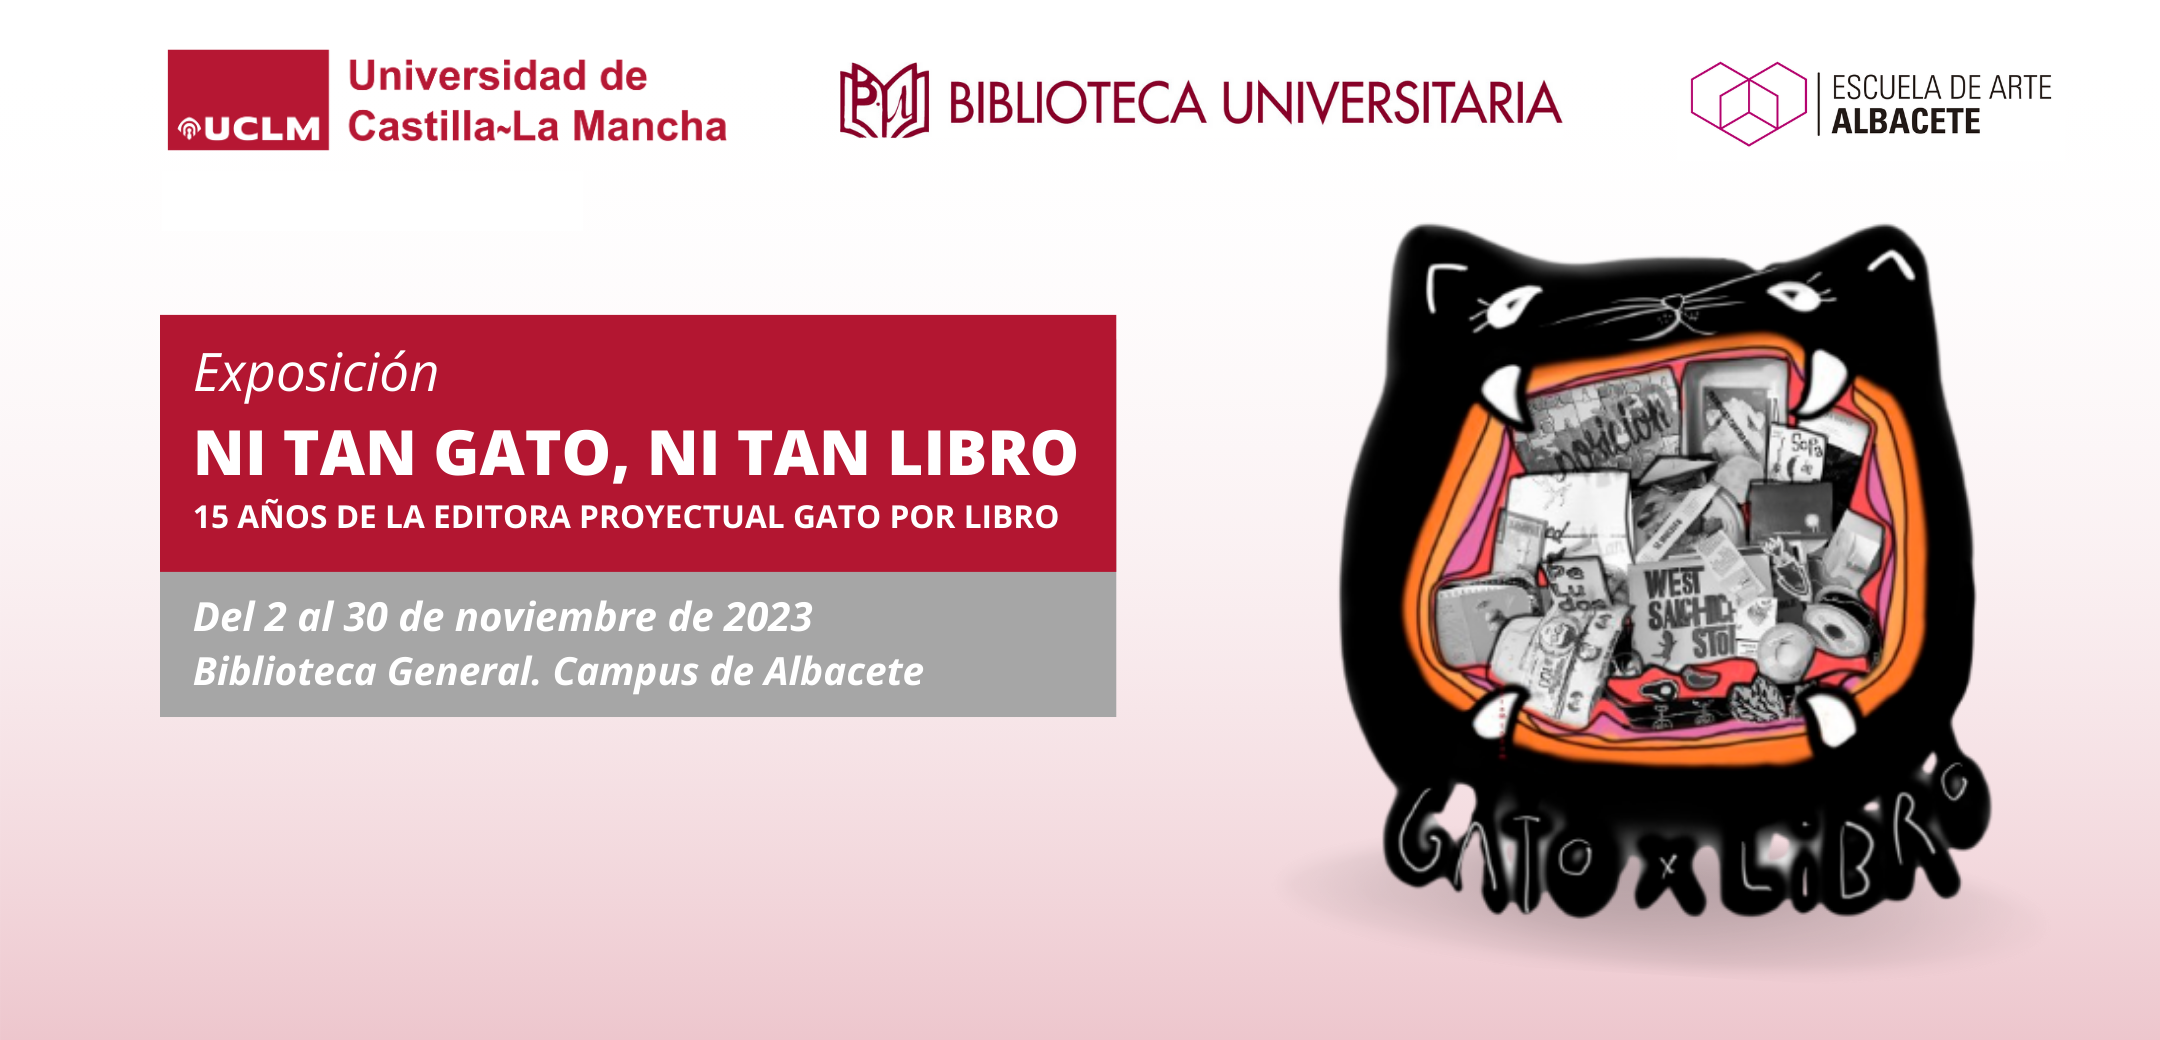 Exposición en la Biblioteca General del campus de Albacete